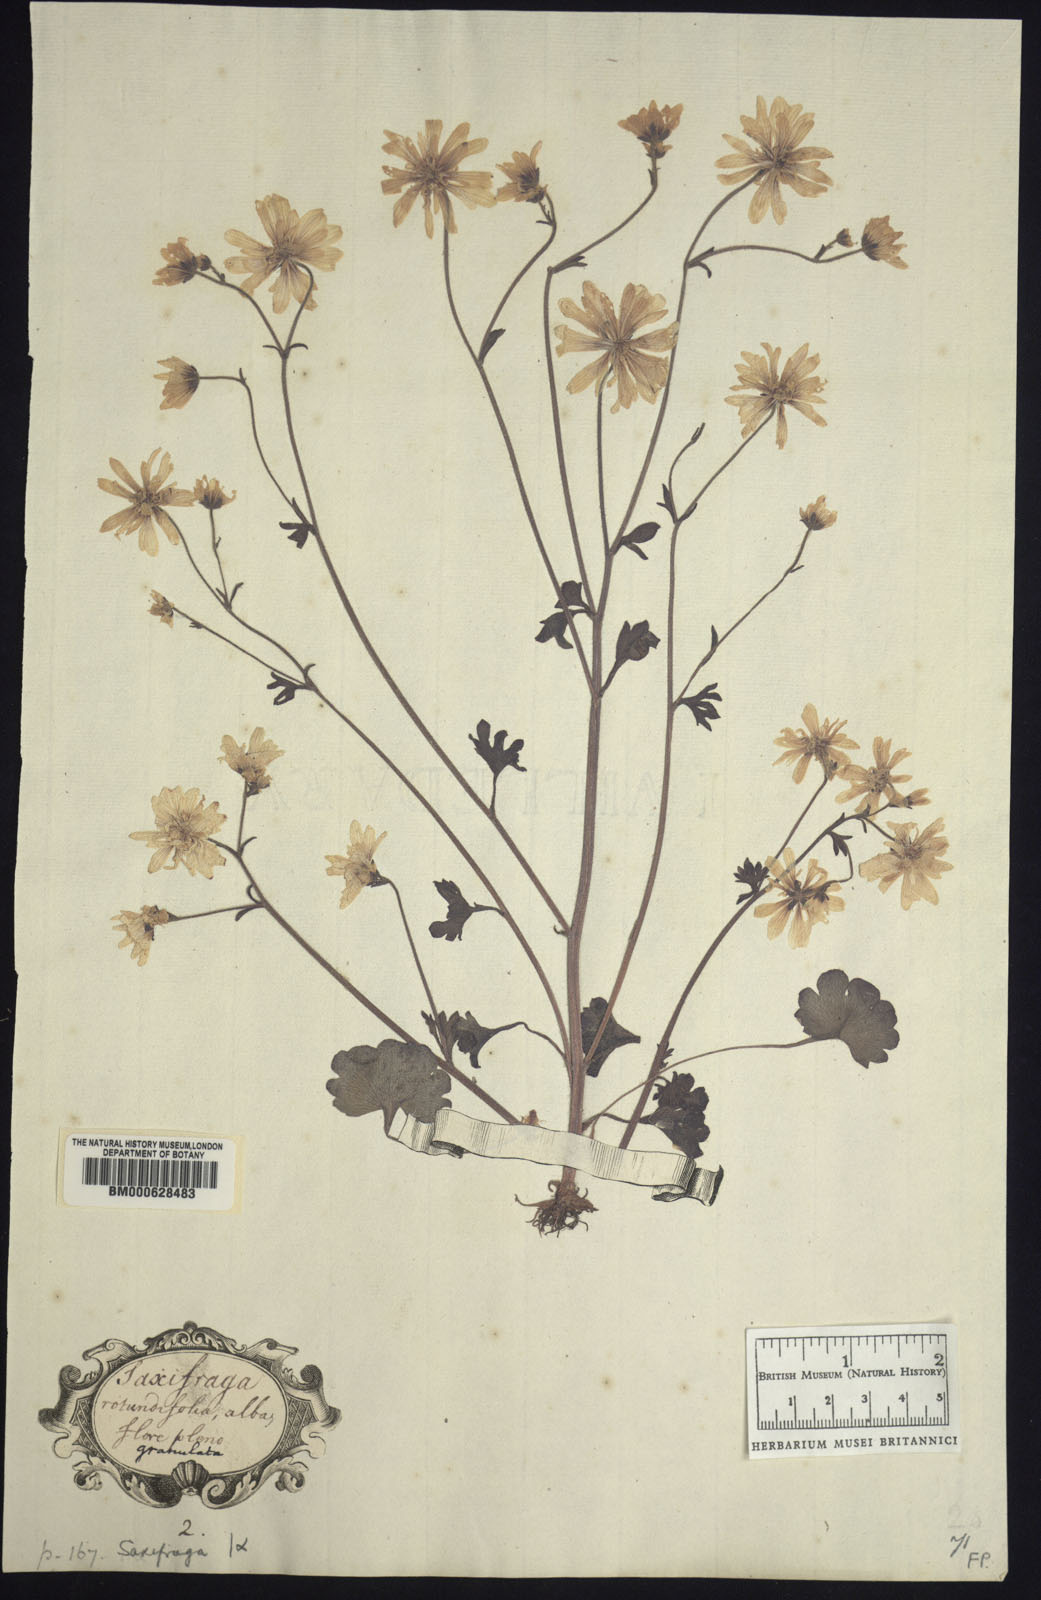 Haarlems Klokkenspel in het Clfford Herbarium - BM000628483